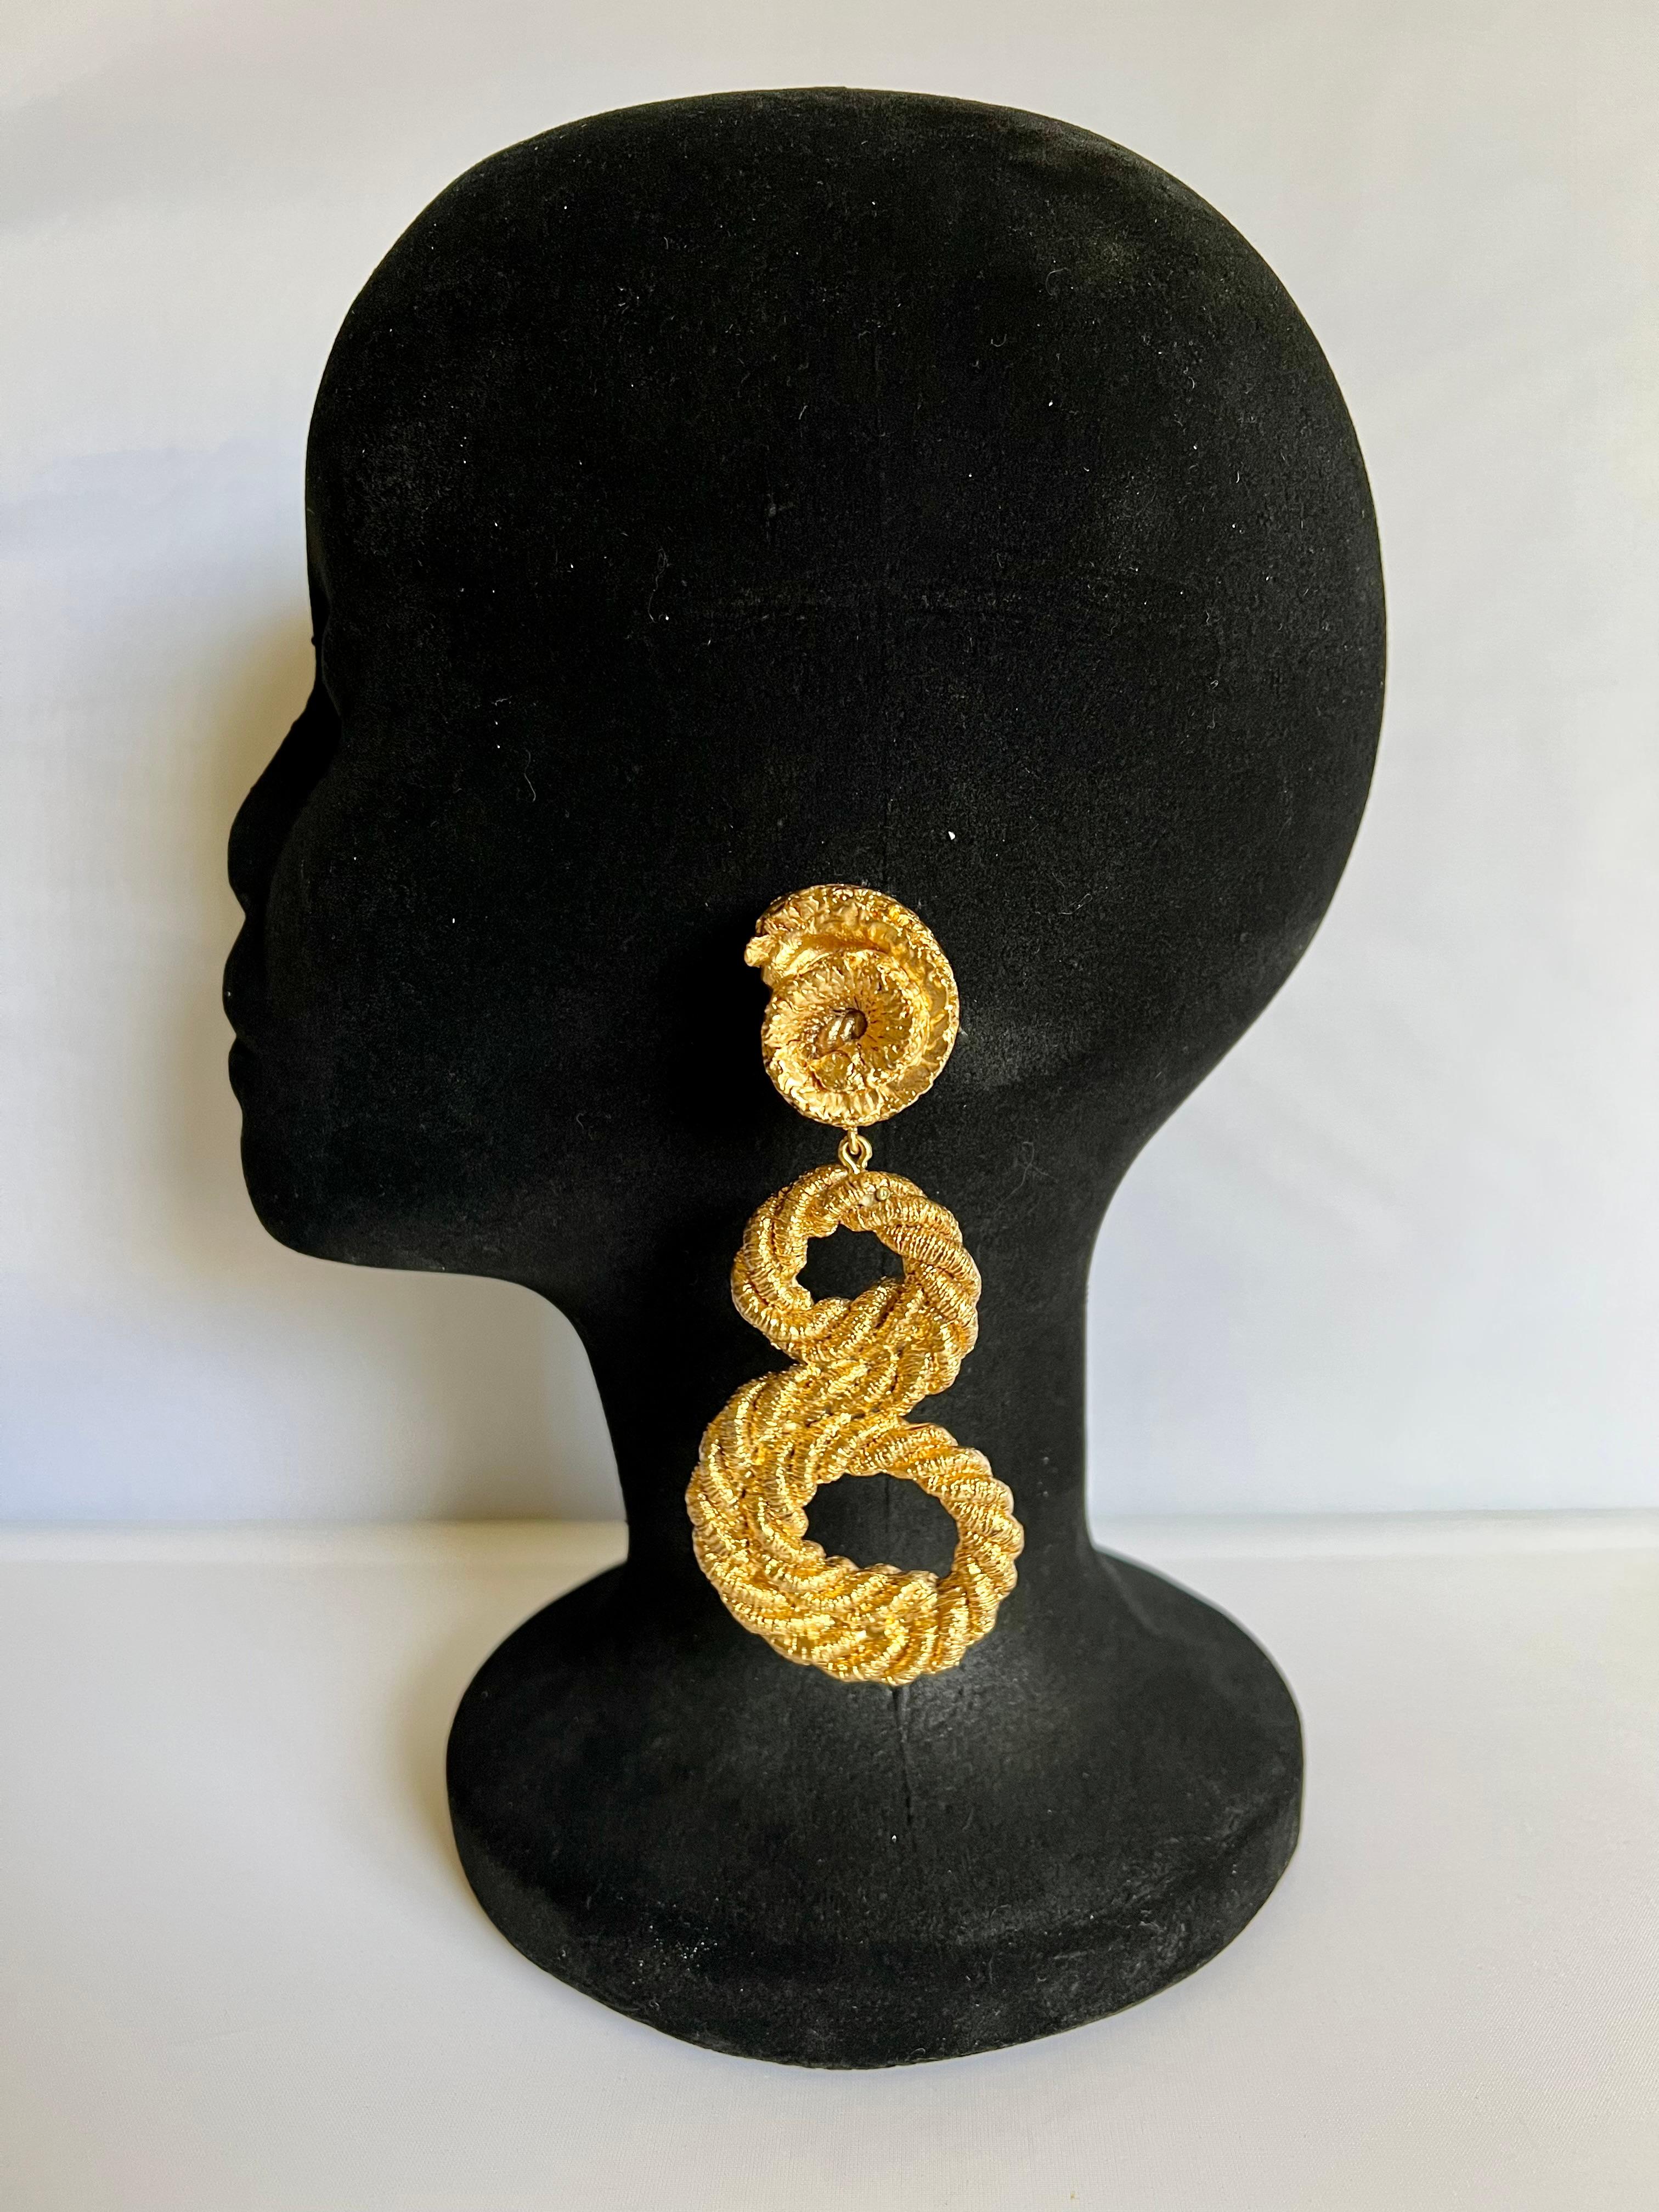 XL klobig vintage Französisch  goldfarbene, geknotete Seilwirbel-Ohrringe, hergestellt in Frankreich um 1980.